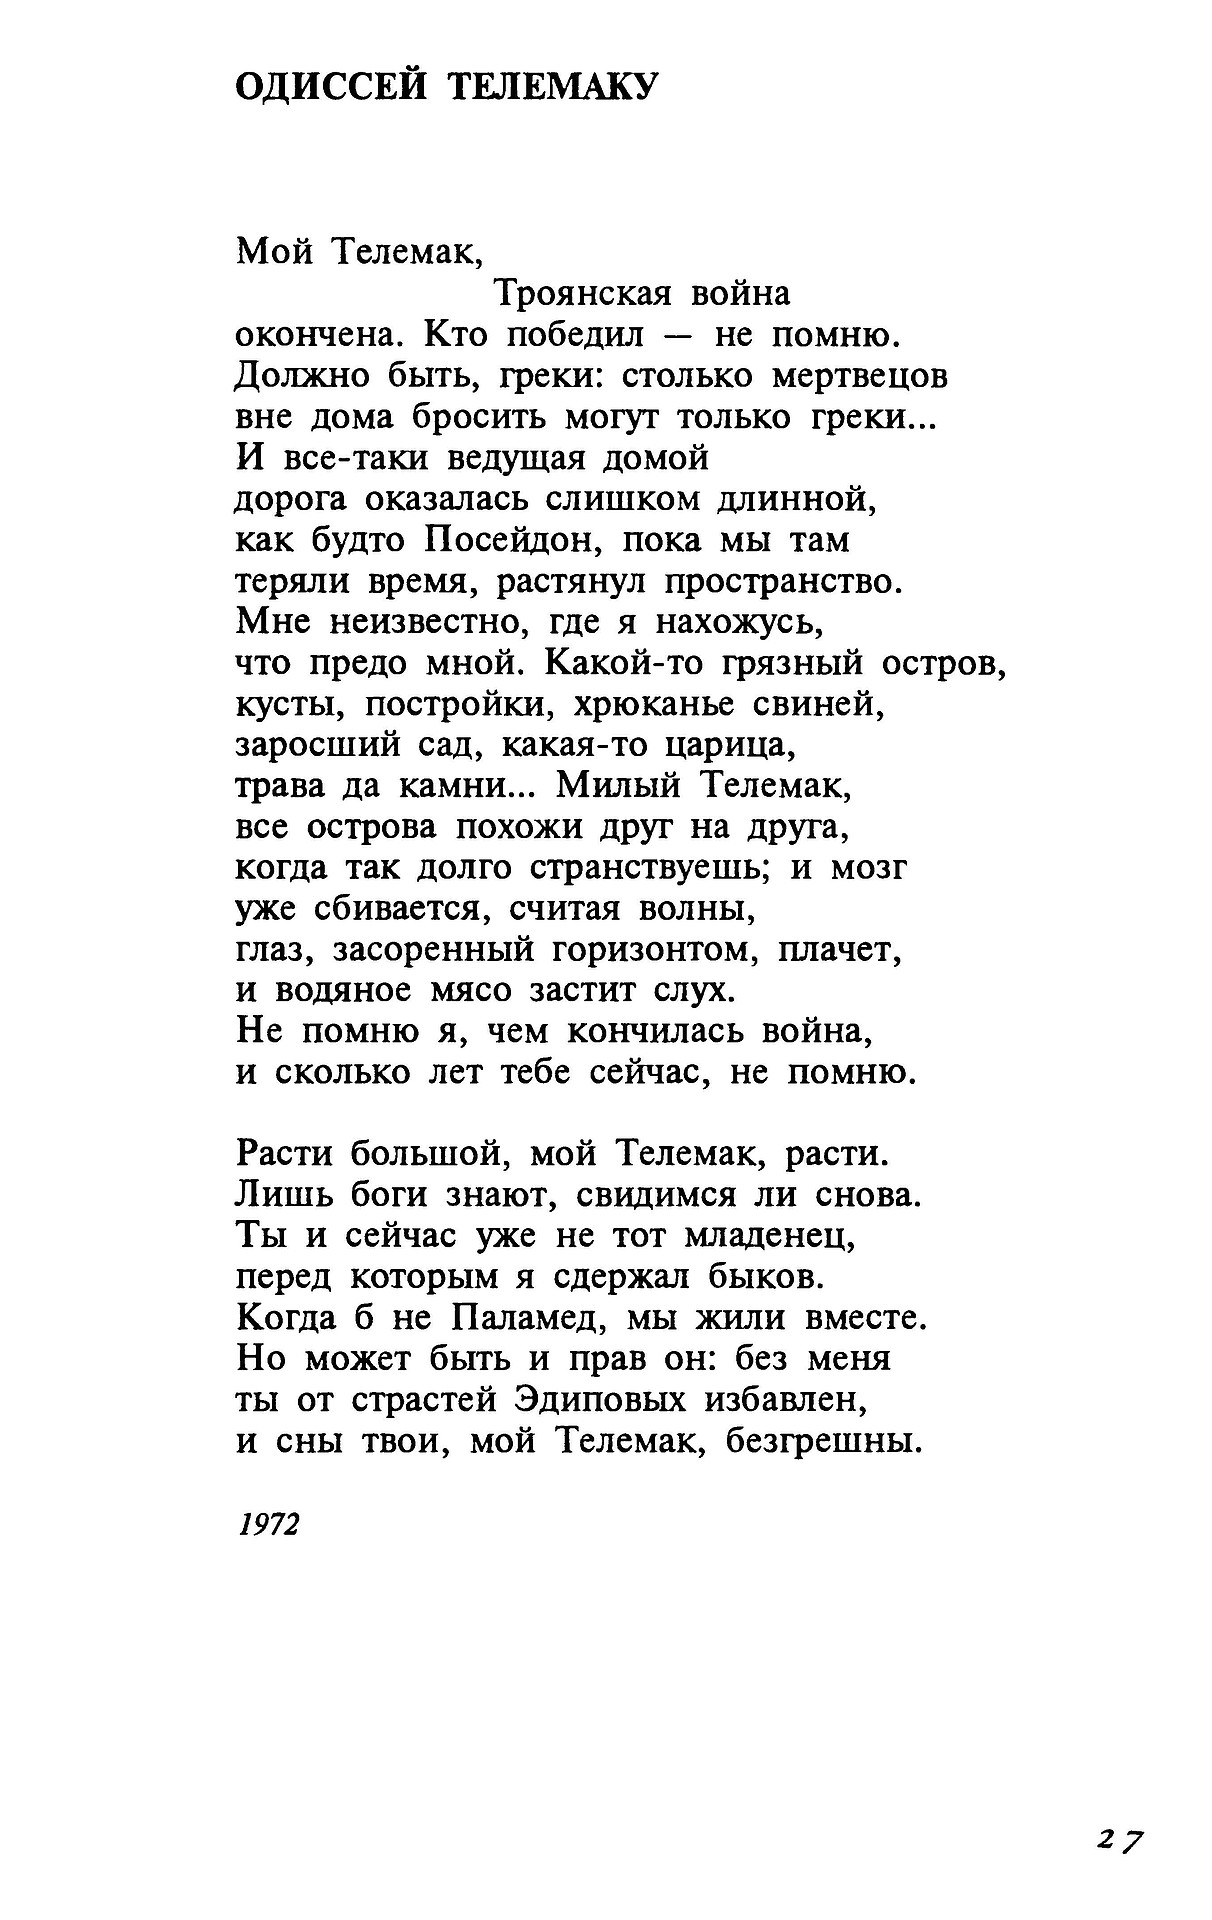 Стихотворение бродского на независимость украины текст